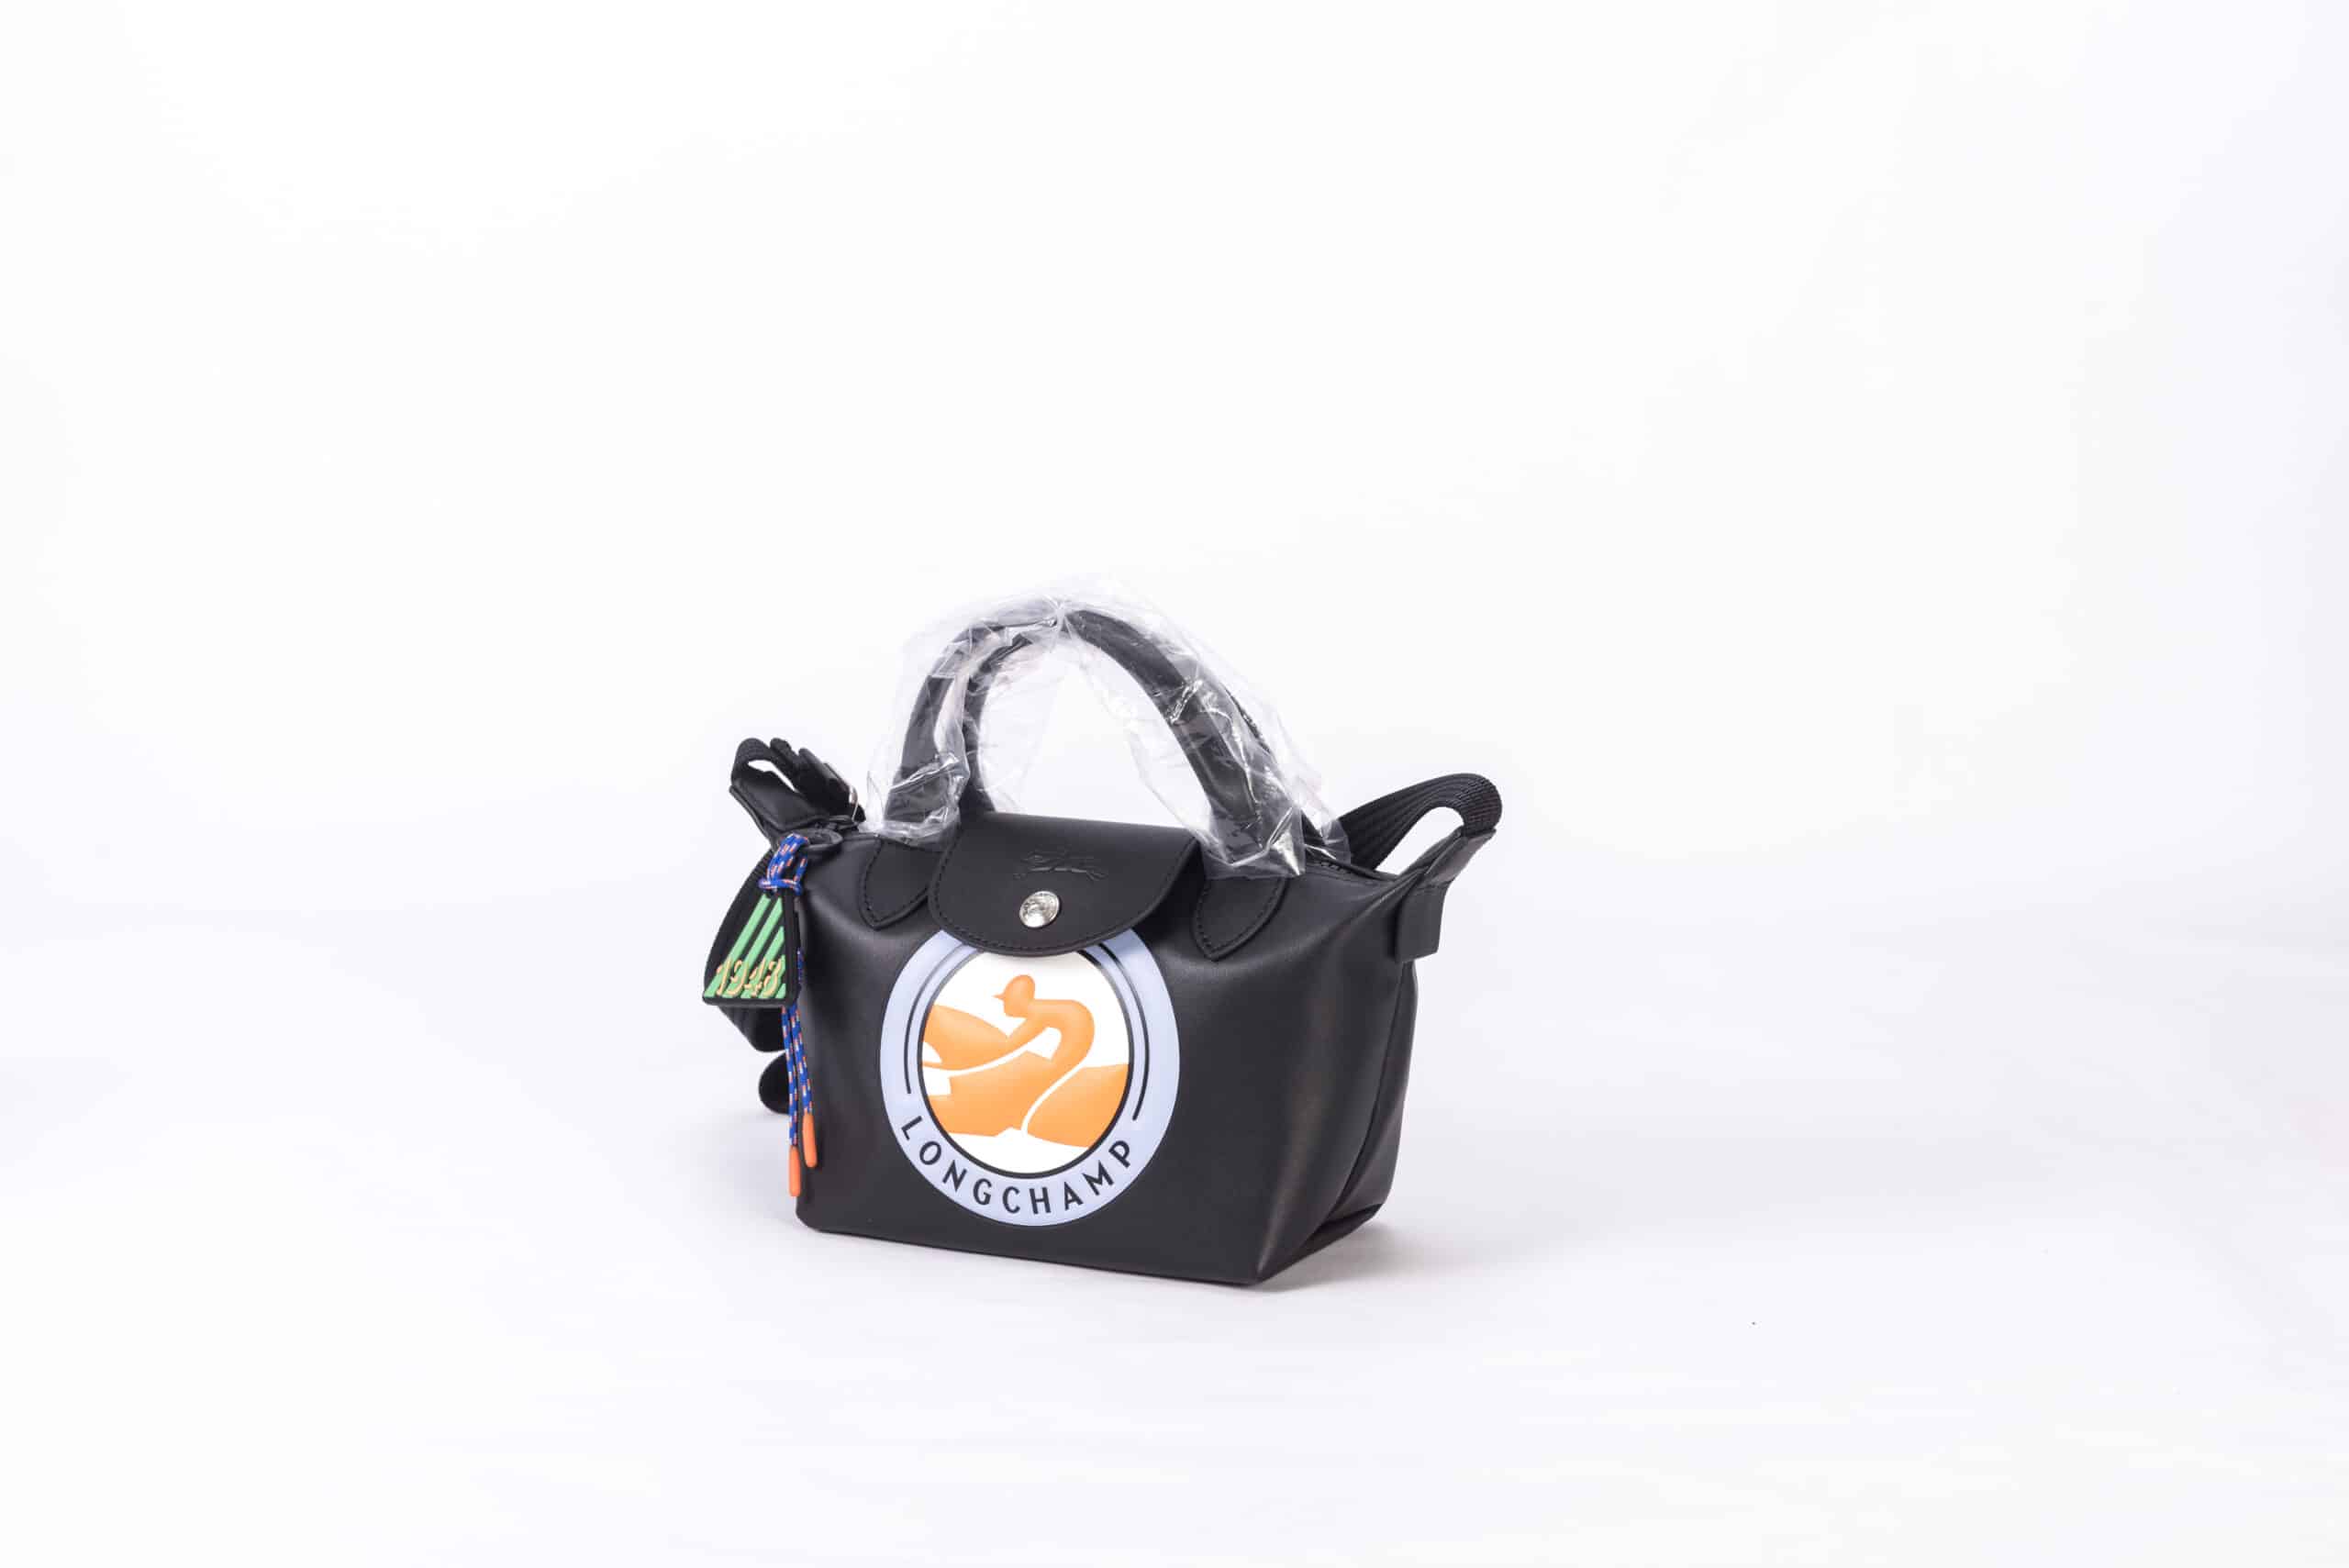 XS Le Pliage Cuir LGP Top Handle Bag